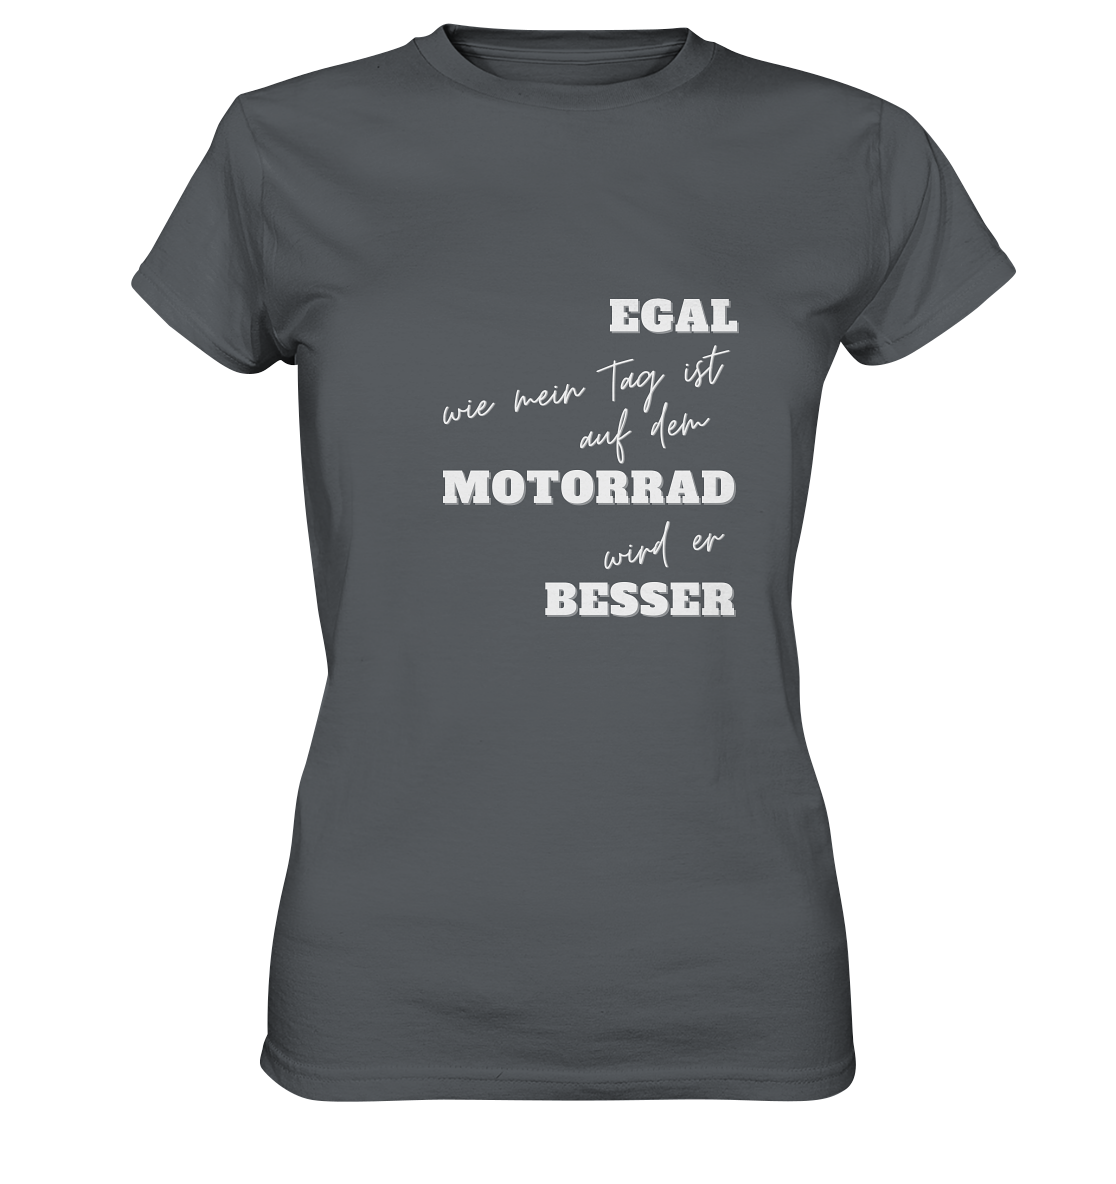 Damen Premium Motorrad-T-Shirt mit weißem Aufdruck: "Egal, wie mein Tag ist, auf dem Motorrad wird er besser" | grau